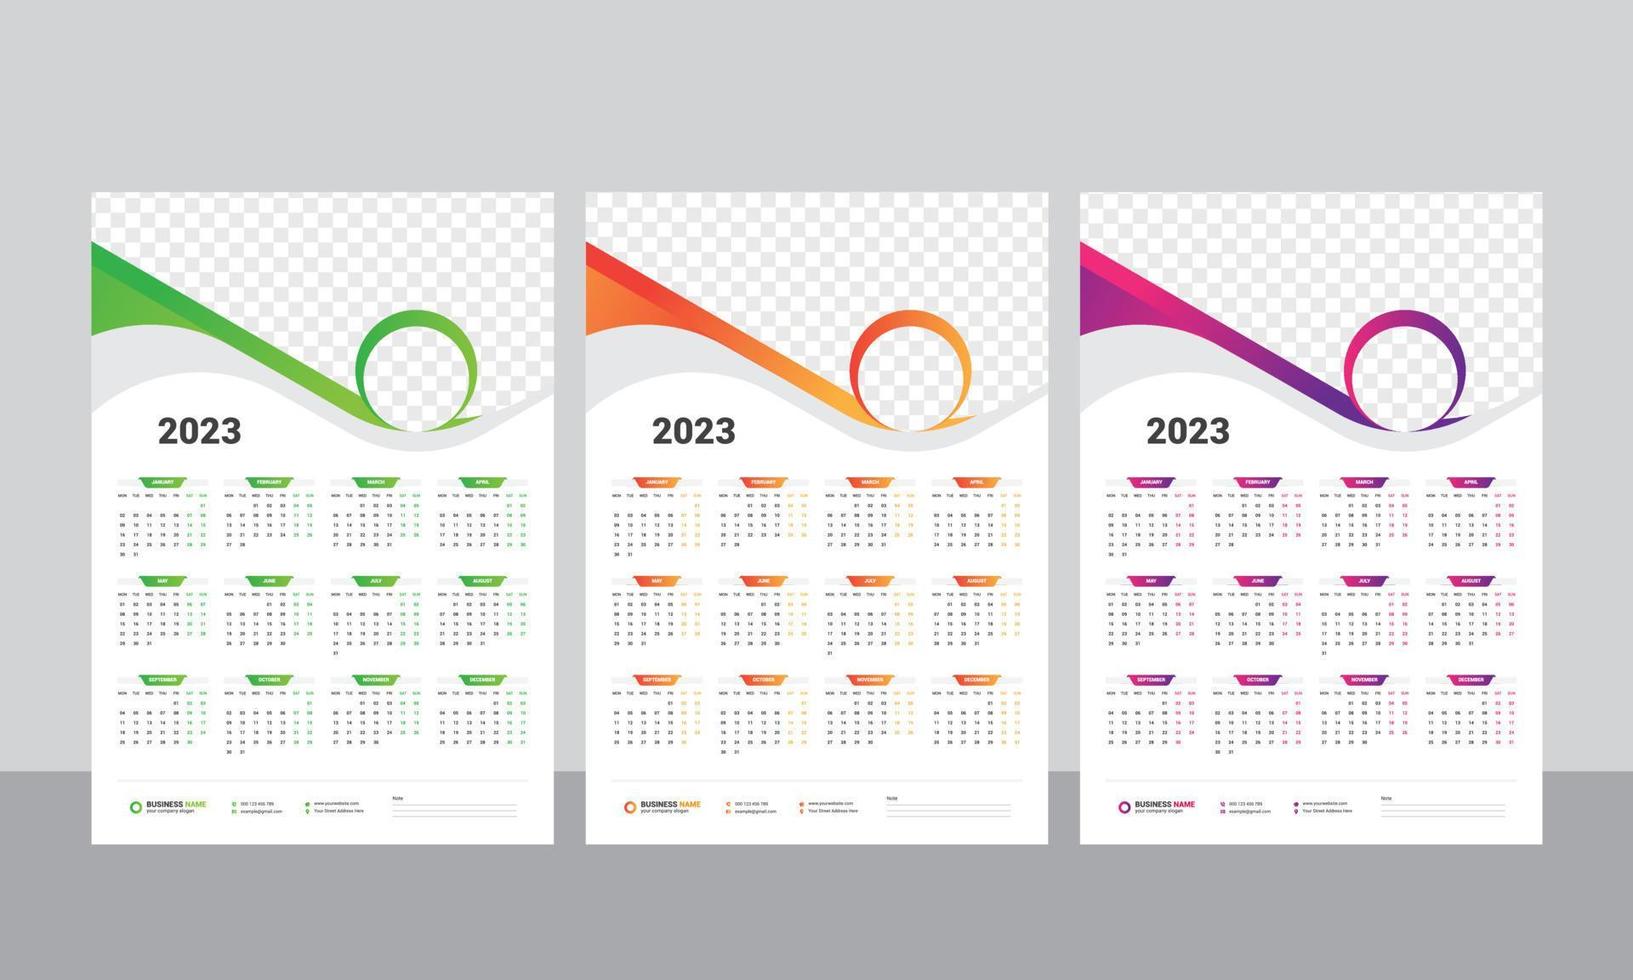 vägg kalender 2023 - ett sida kalender - enda sida kalender - 12 månader kalender vektor